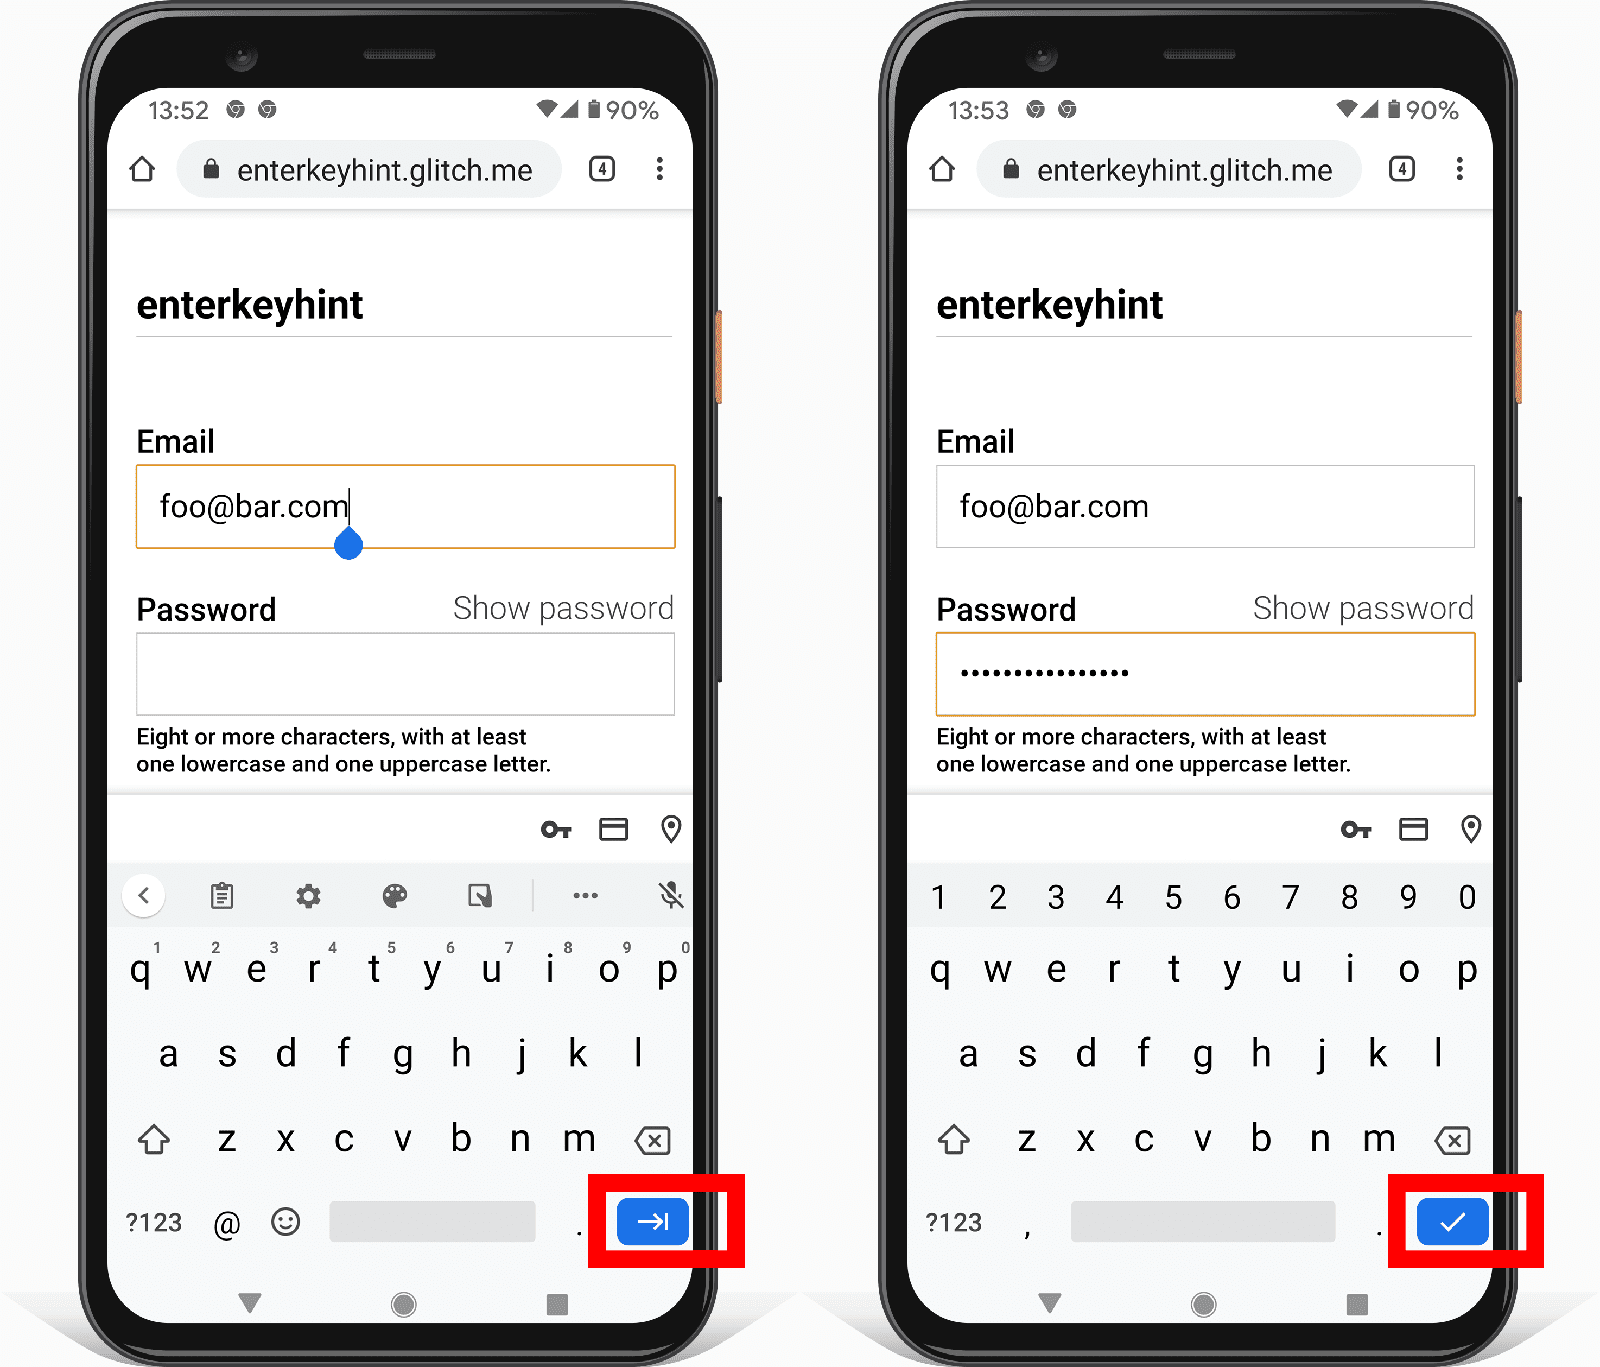 Zwei Screenshots eines Adressformulars auf Android, die zeigen, wie das Eingabeattribut für die Eingabetaste das Symbol der Eingabetaste ändert.